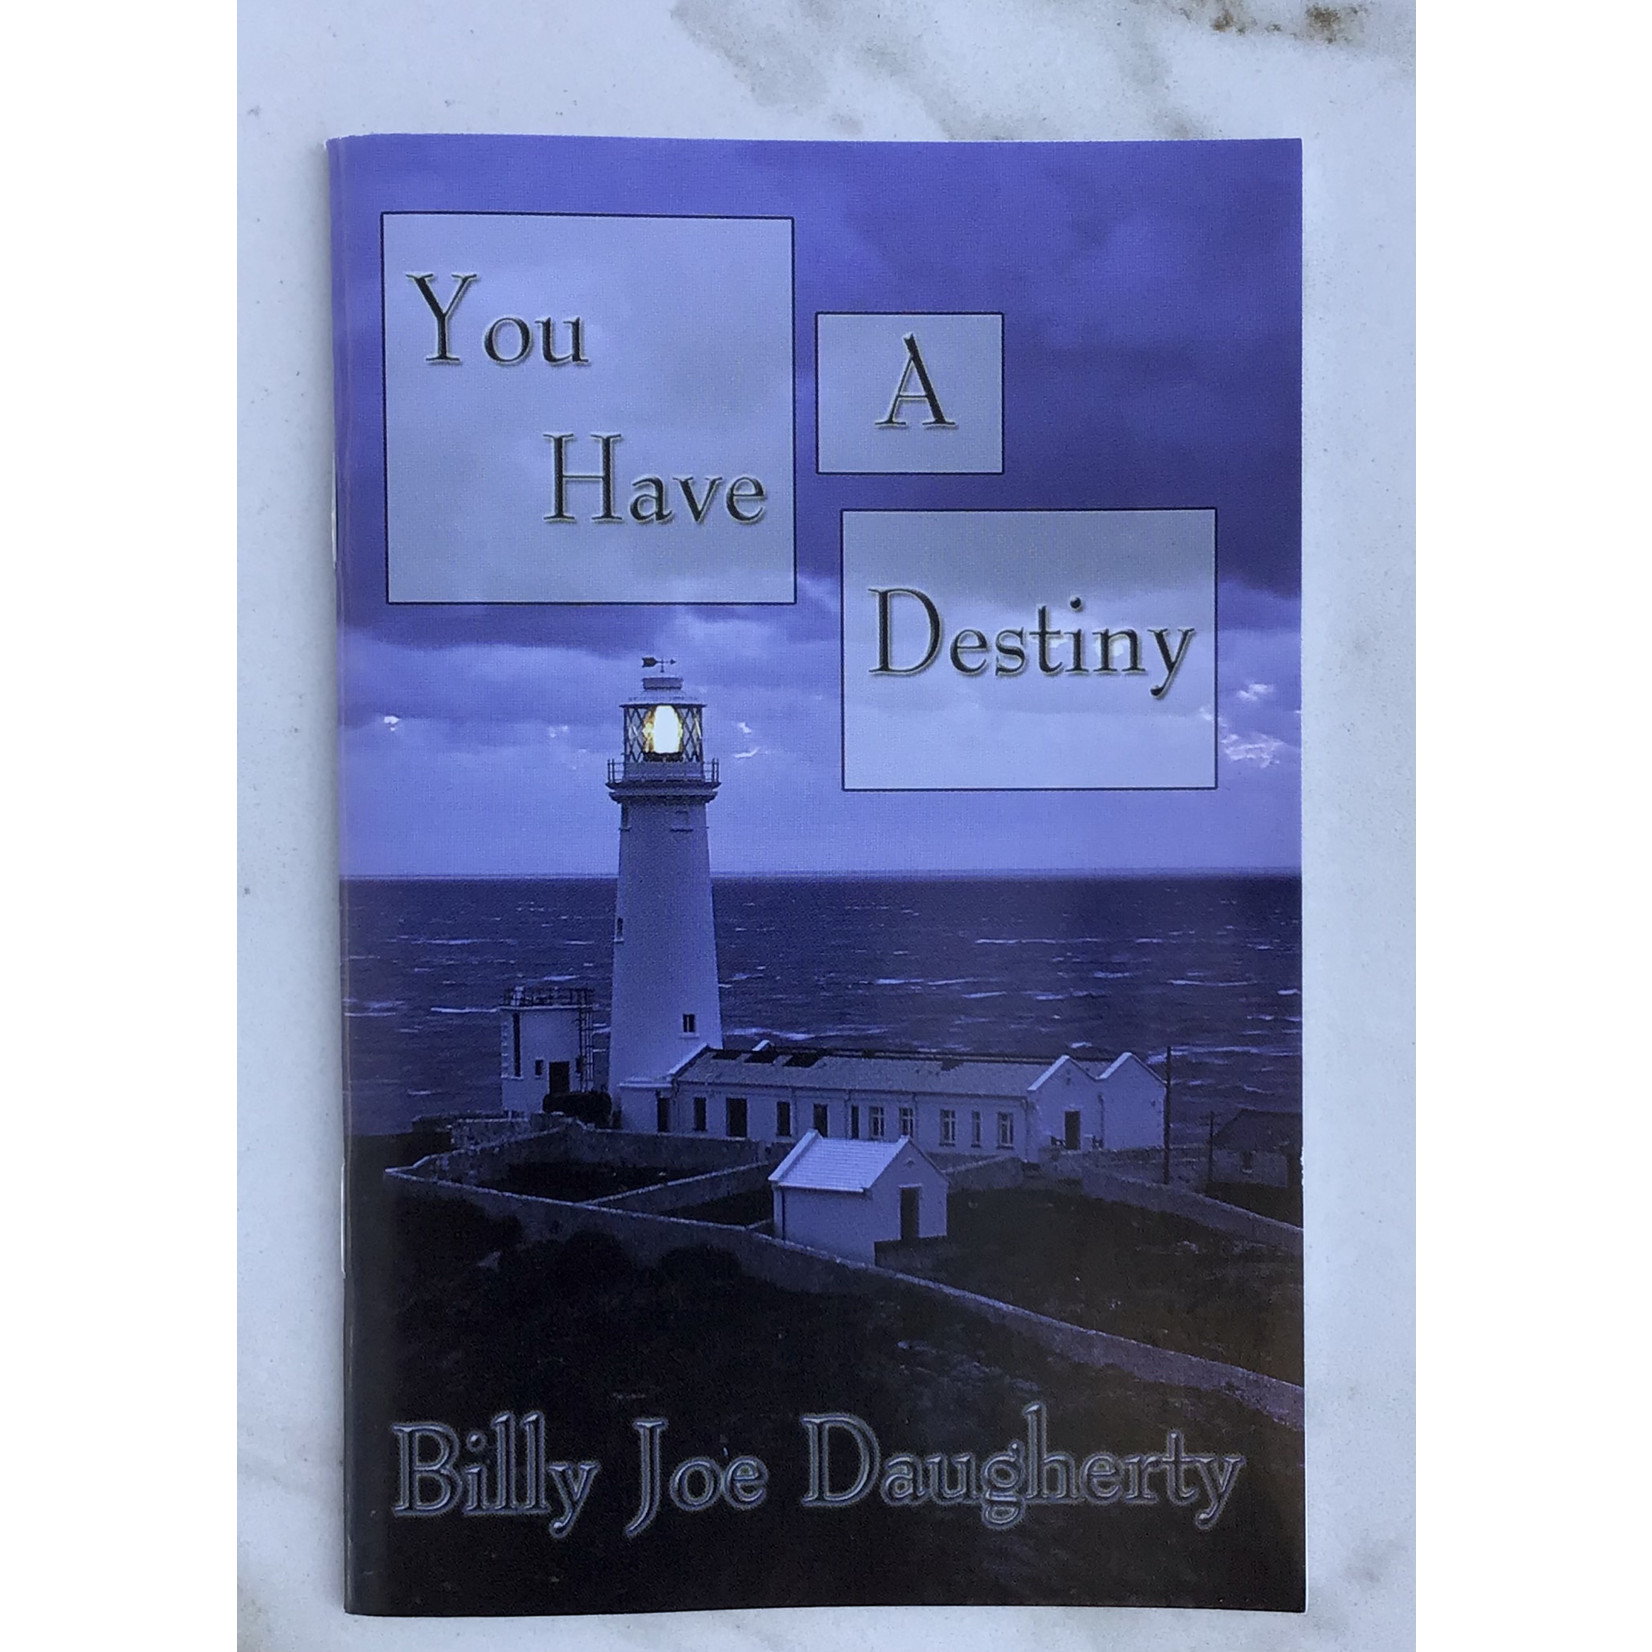 You Have a Destiny - Daugherty, Billy Joe